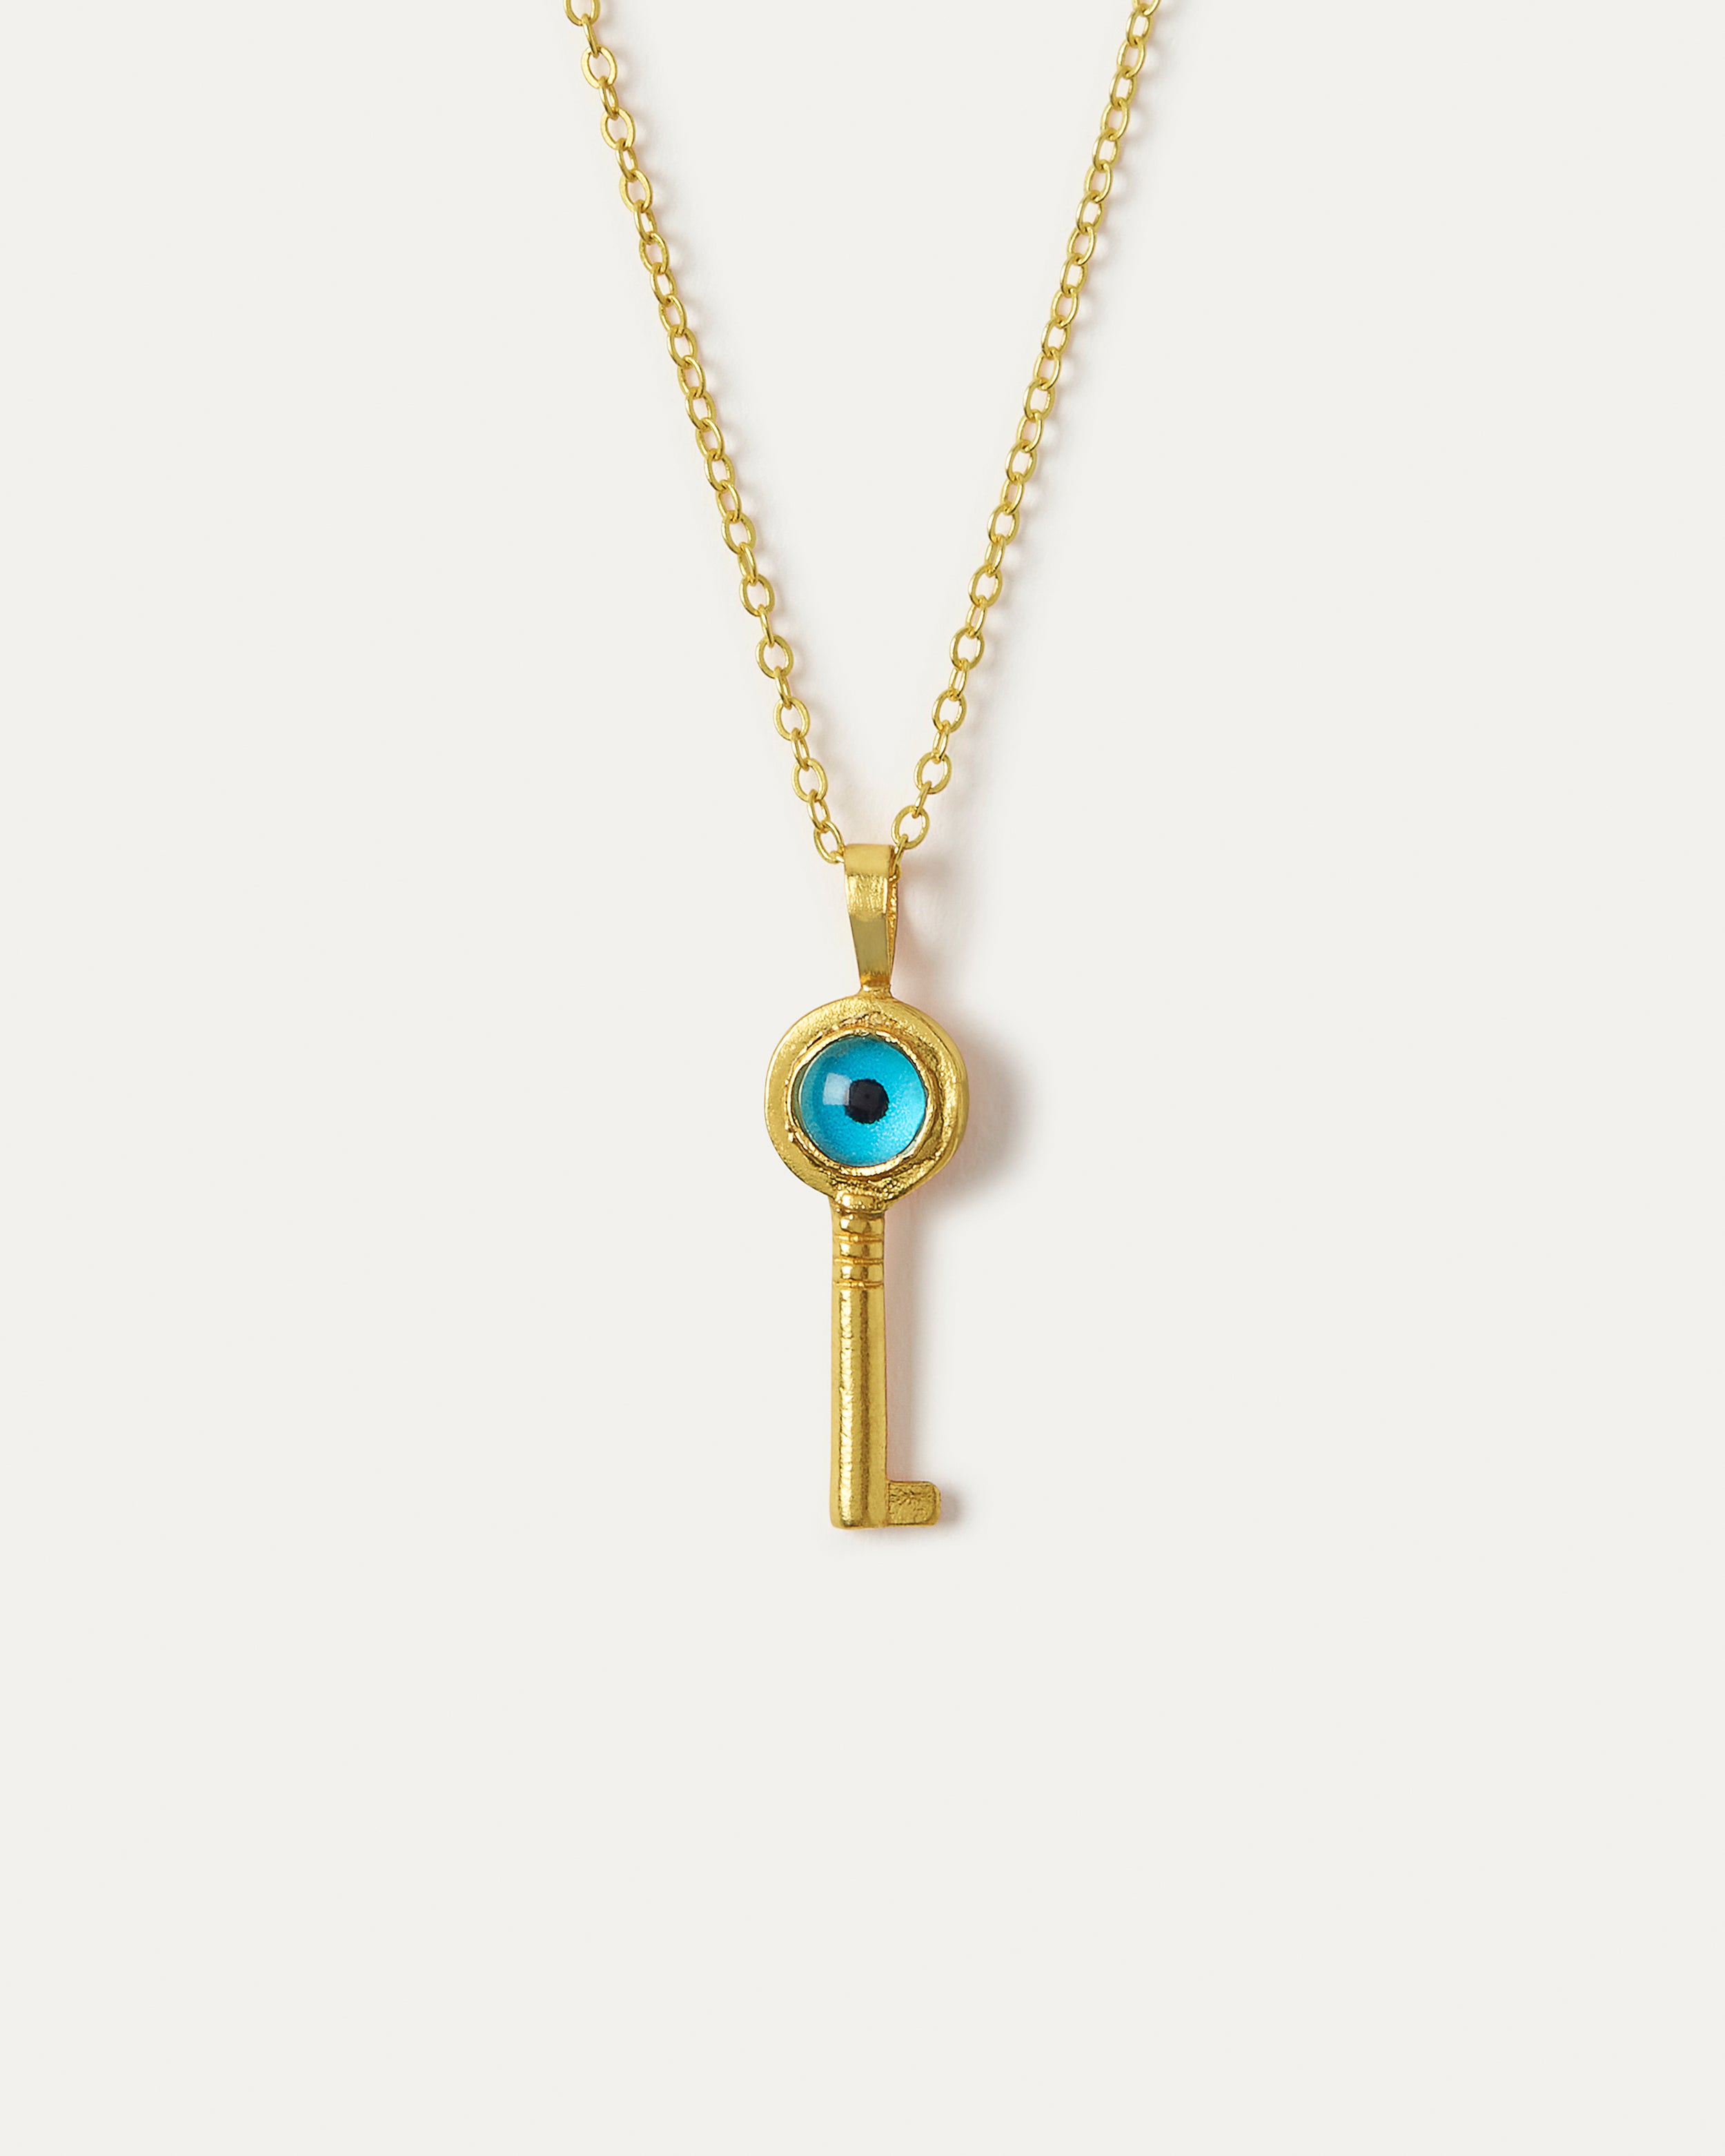 Evil Eye key necklace